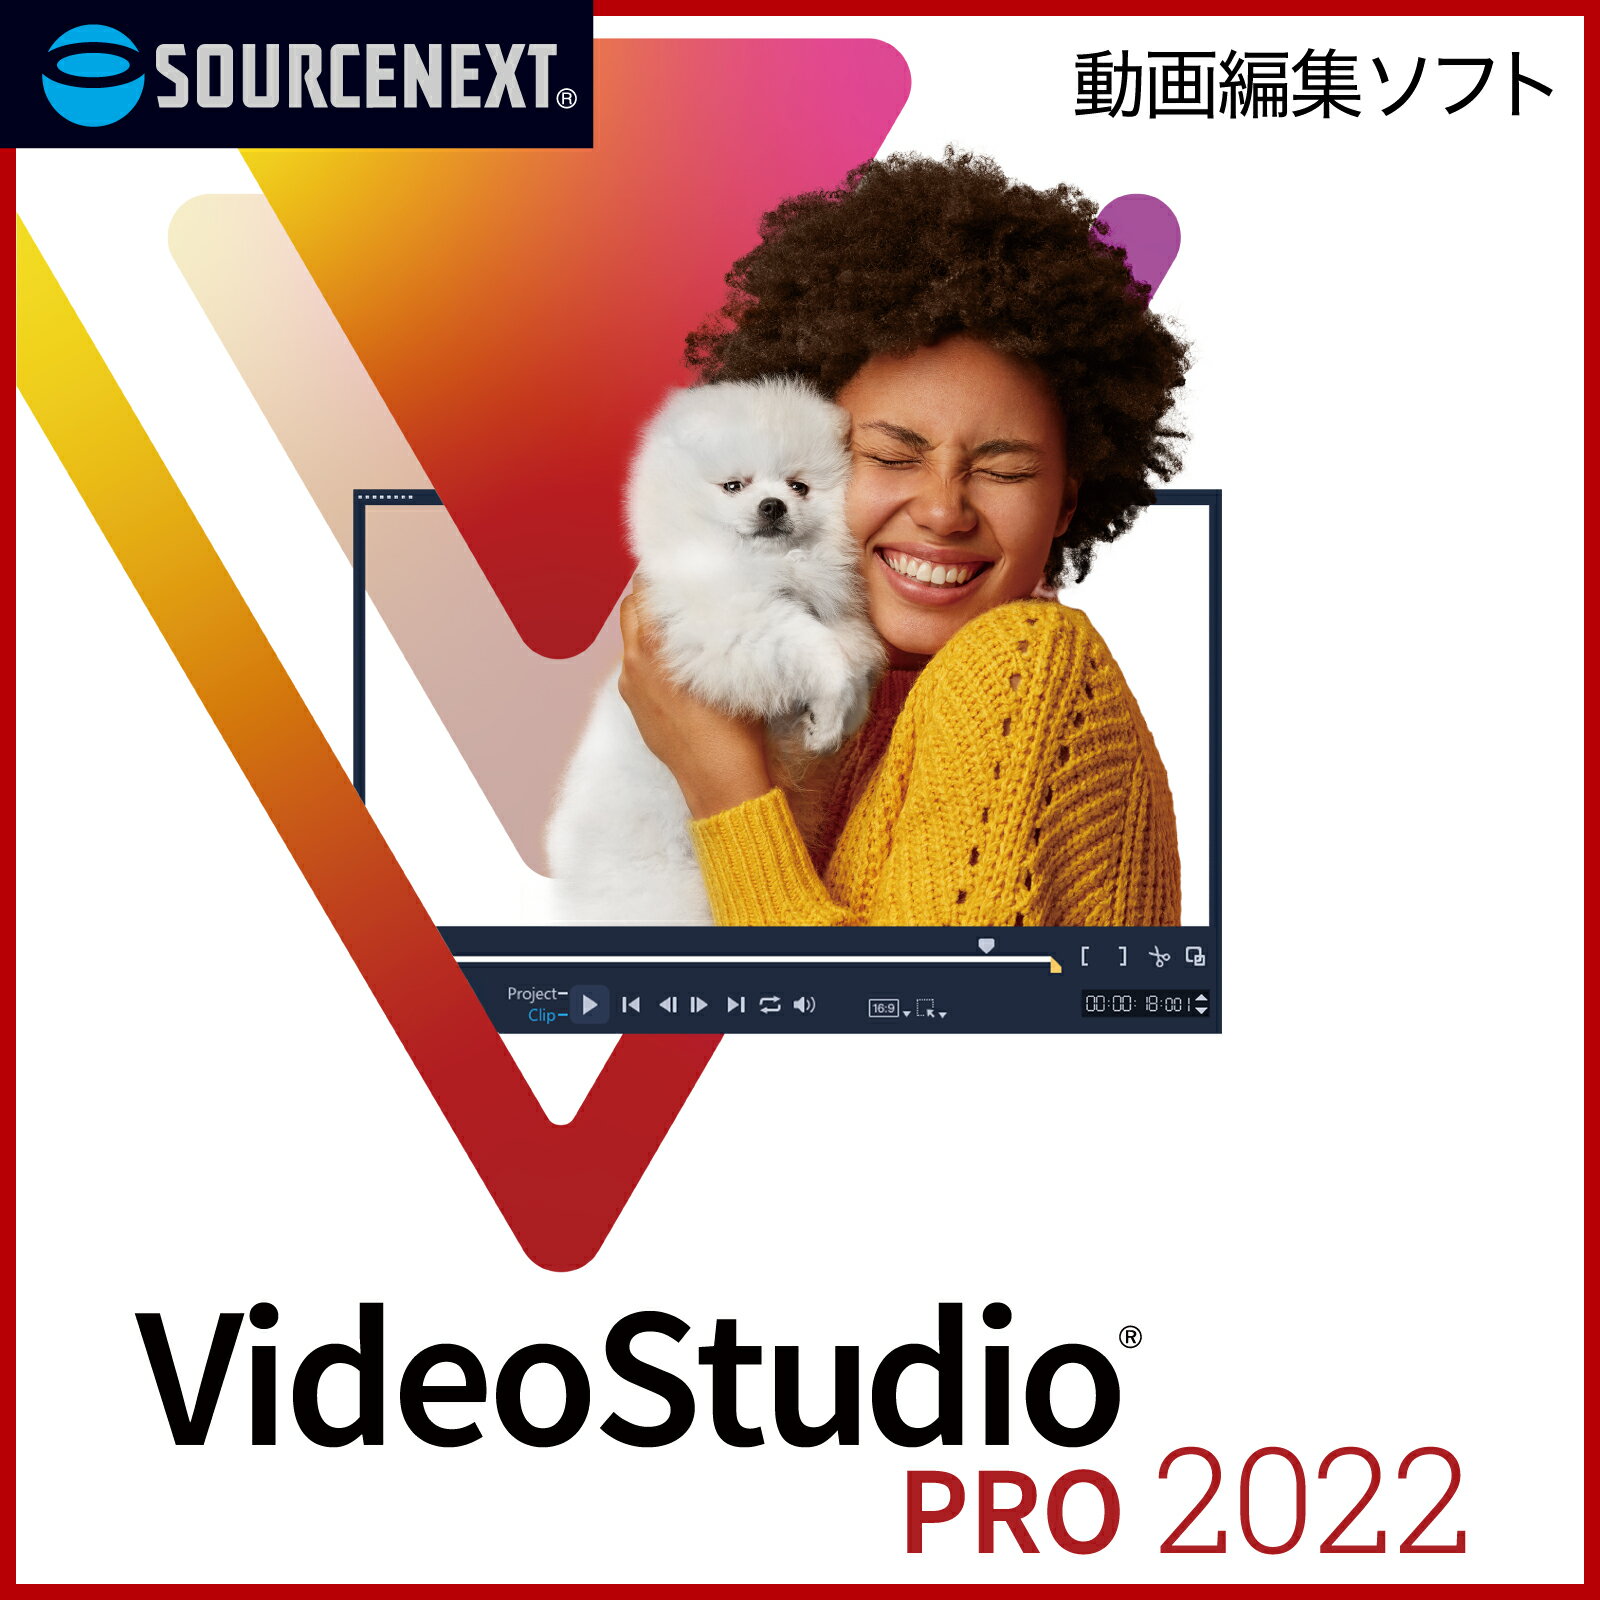 【マラソン限定価格】(旧版)VideoStudio Pro 2022 Windows用 動画編集ソフト COREL コーレル ビデオ編集 スライドショー作成 DVD作成 ソースネクスト 送料無料